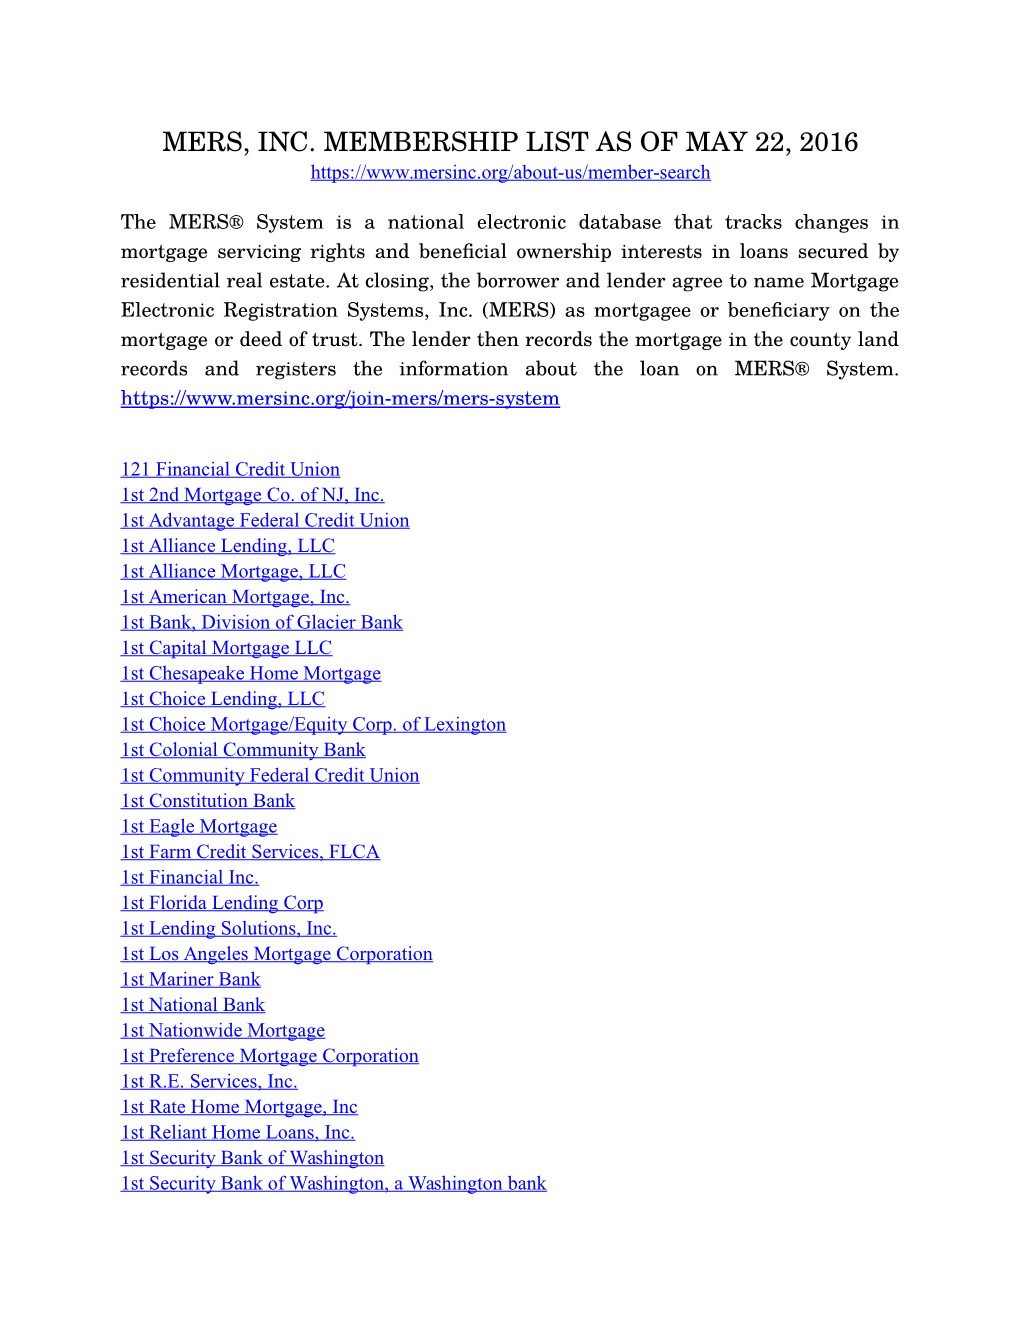 Mers Membership List